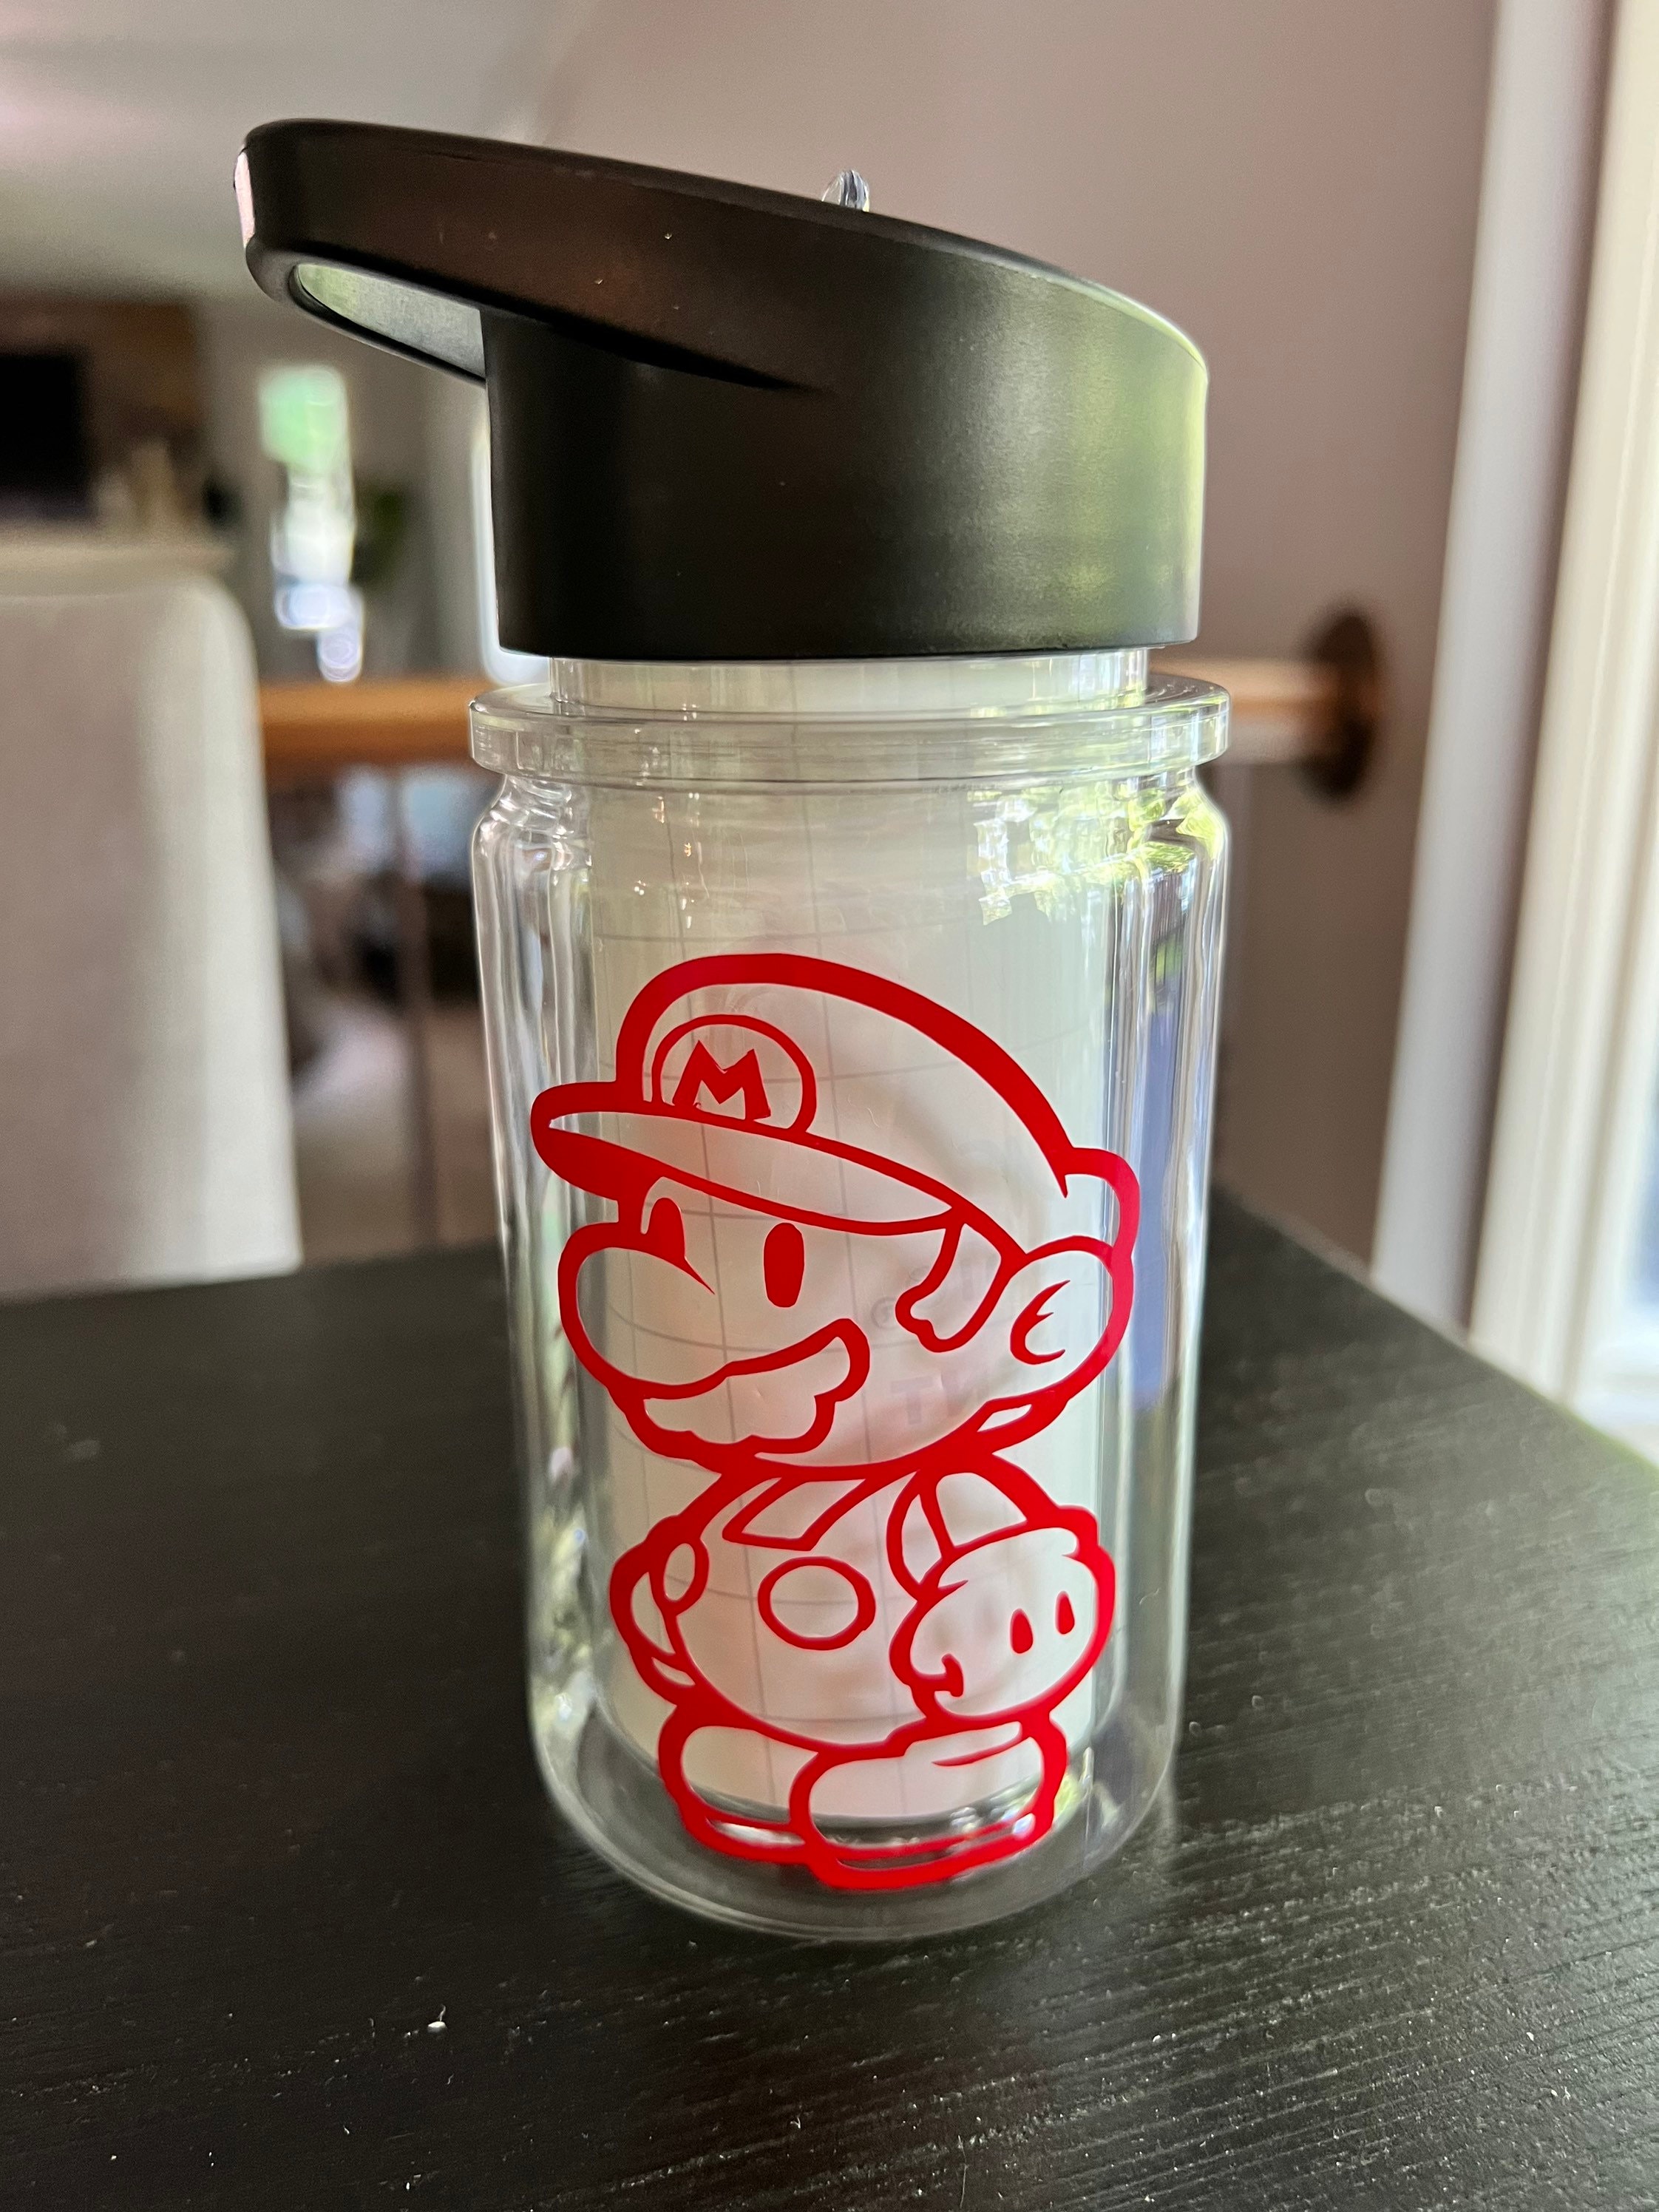 Official Nintendo Super Mario Bros Metallic Bottle,700mL - Shop